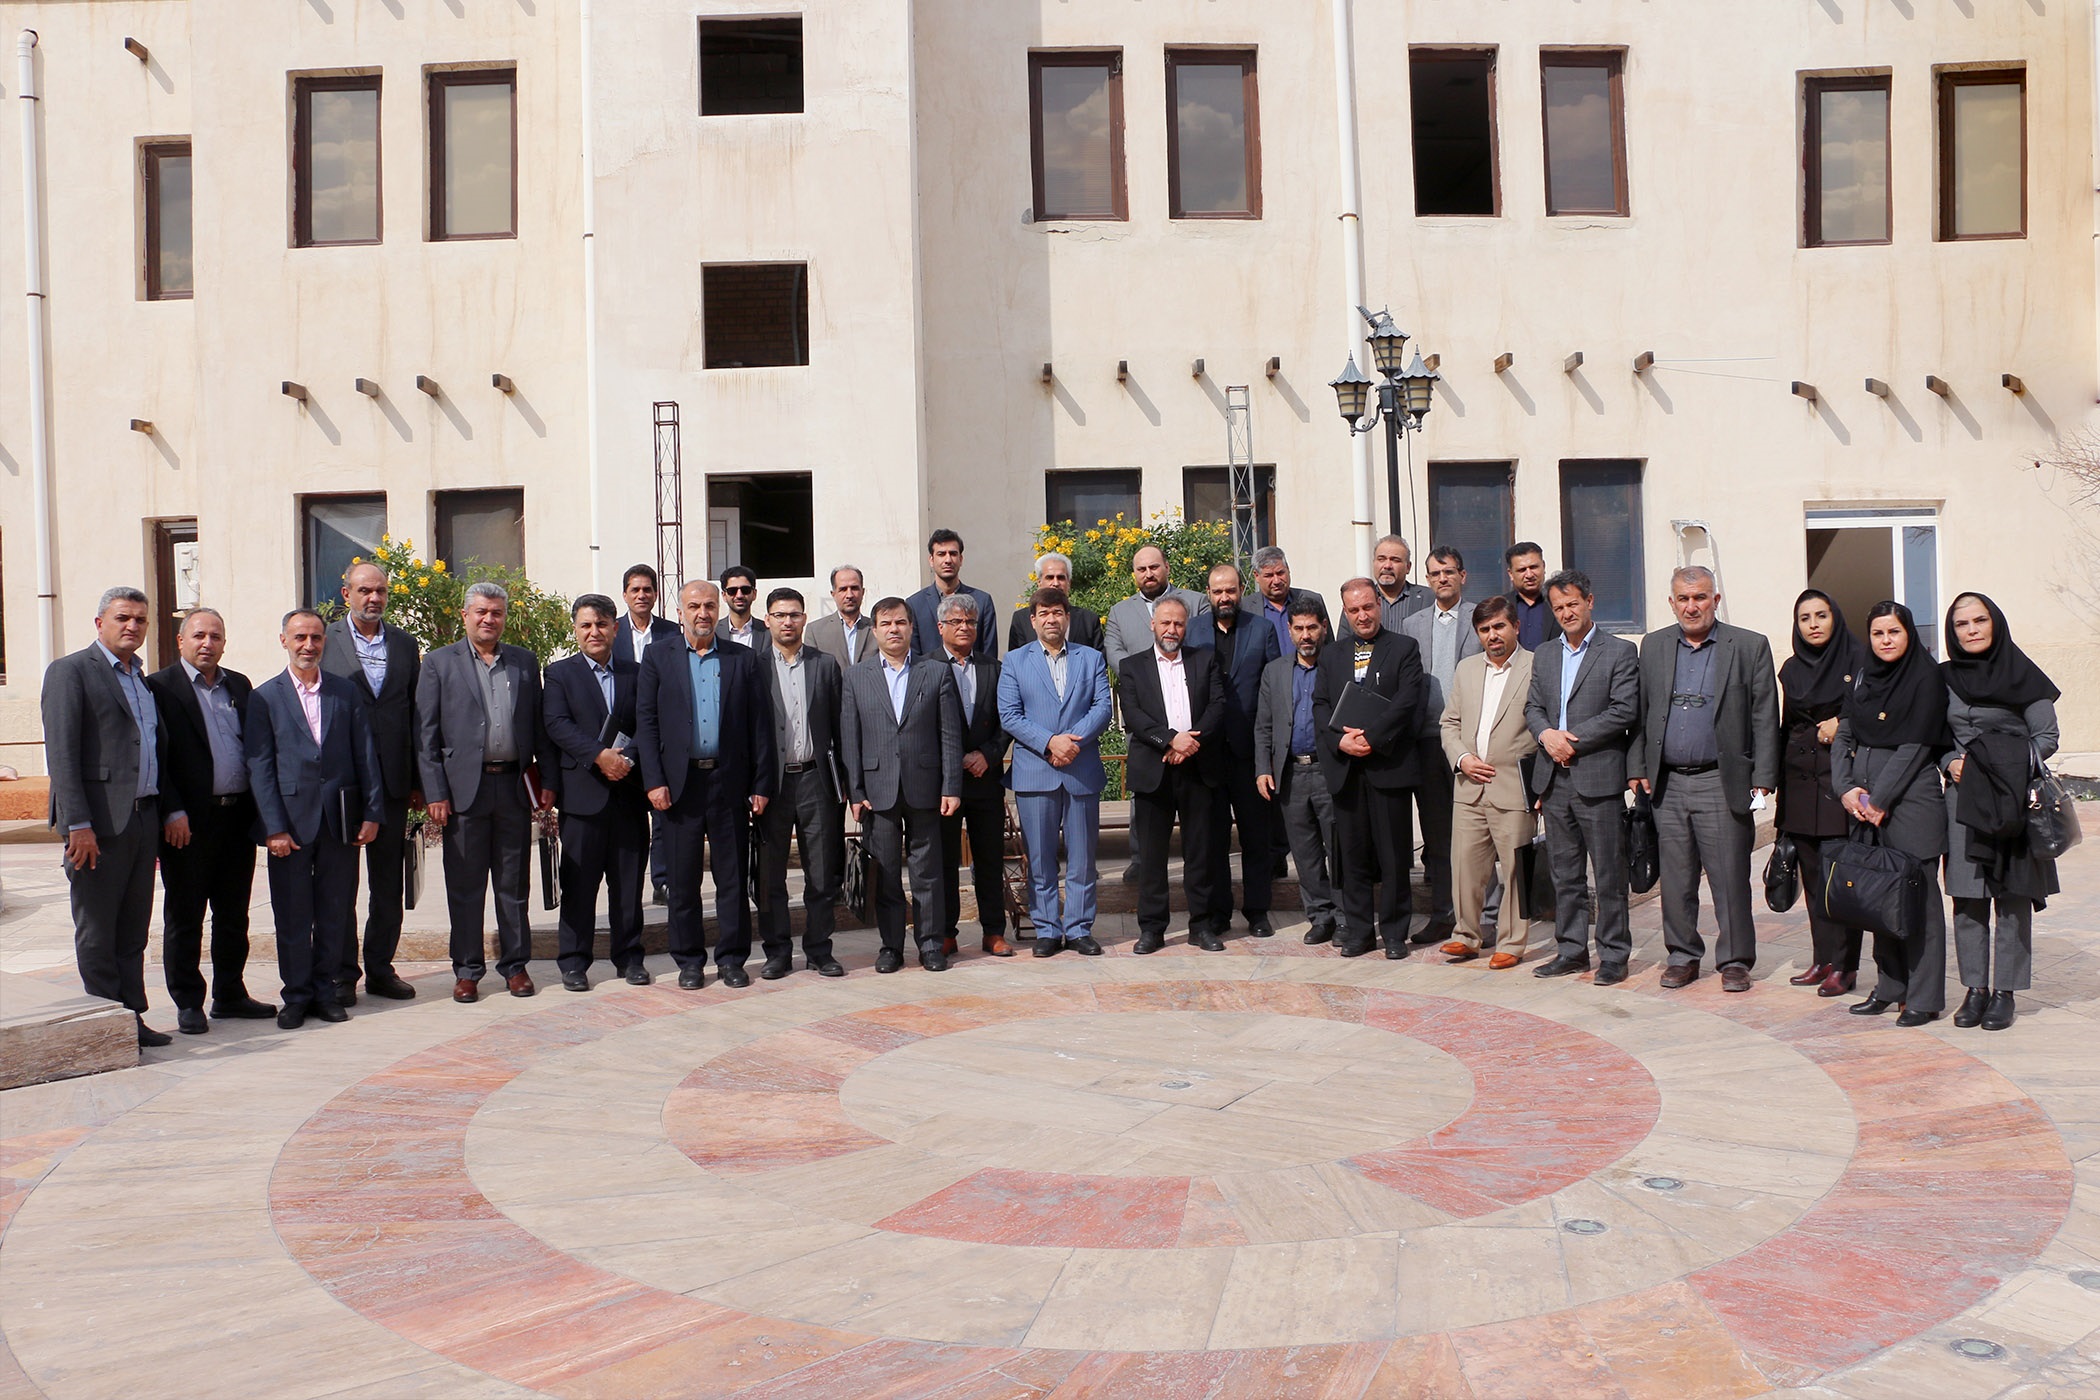 برگزاری همایش مشترک مدیران ارشد آموزش و پرورش پنج استان با بیمه دانا در بوشهر